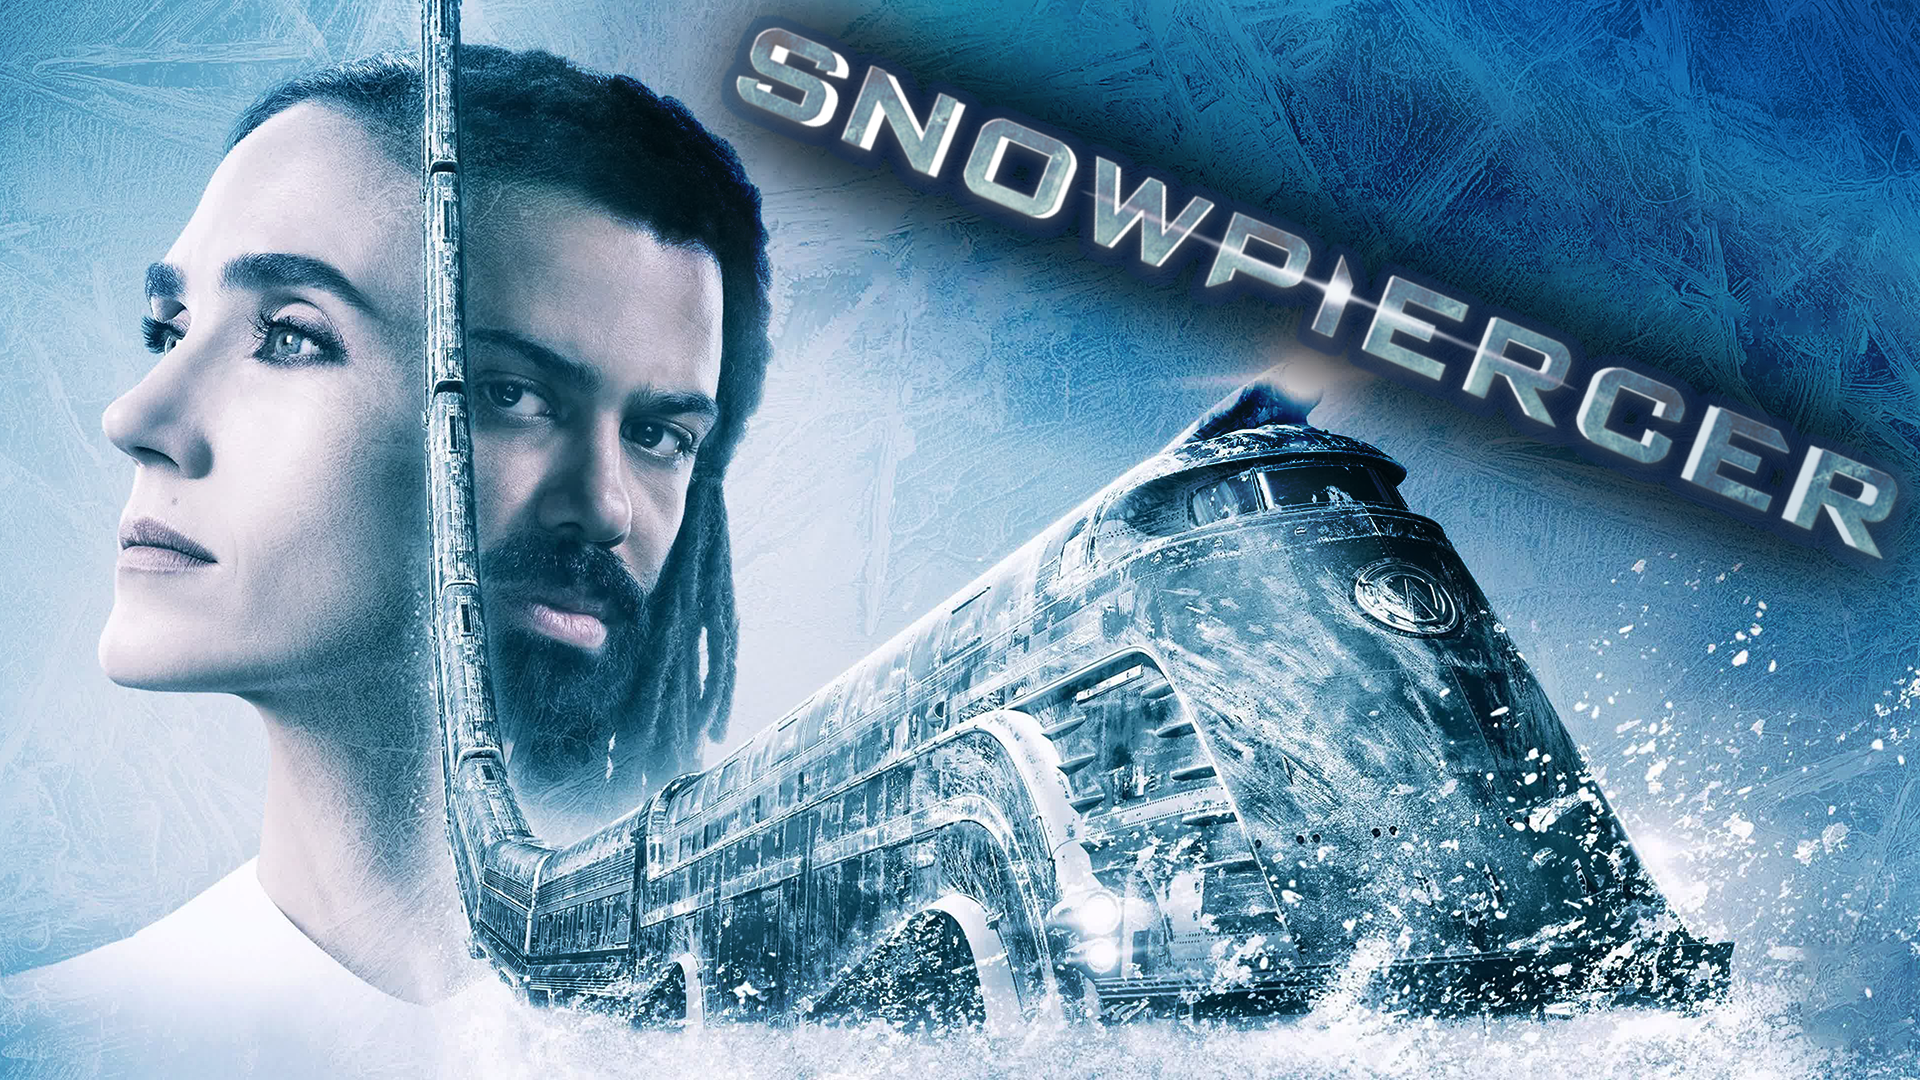 Сквозь снег – 2 сезон 2 серия / Snowpiercer